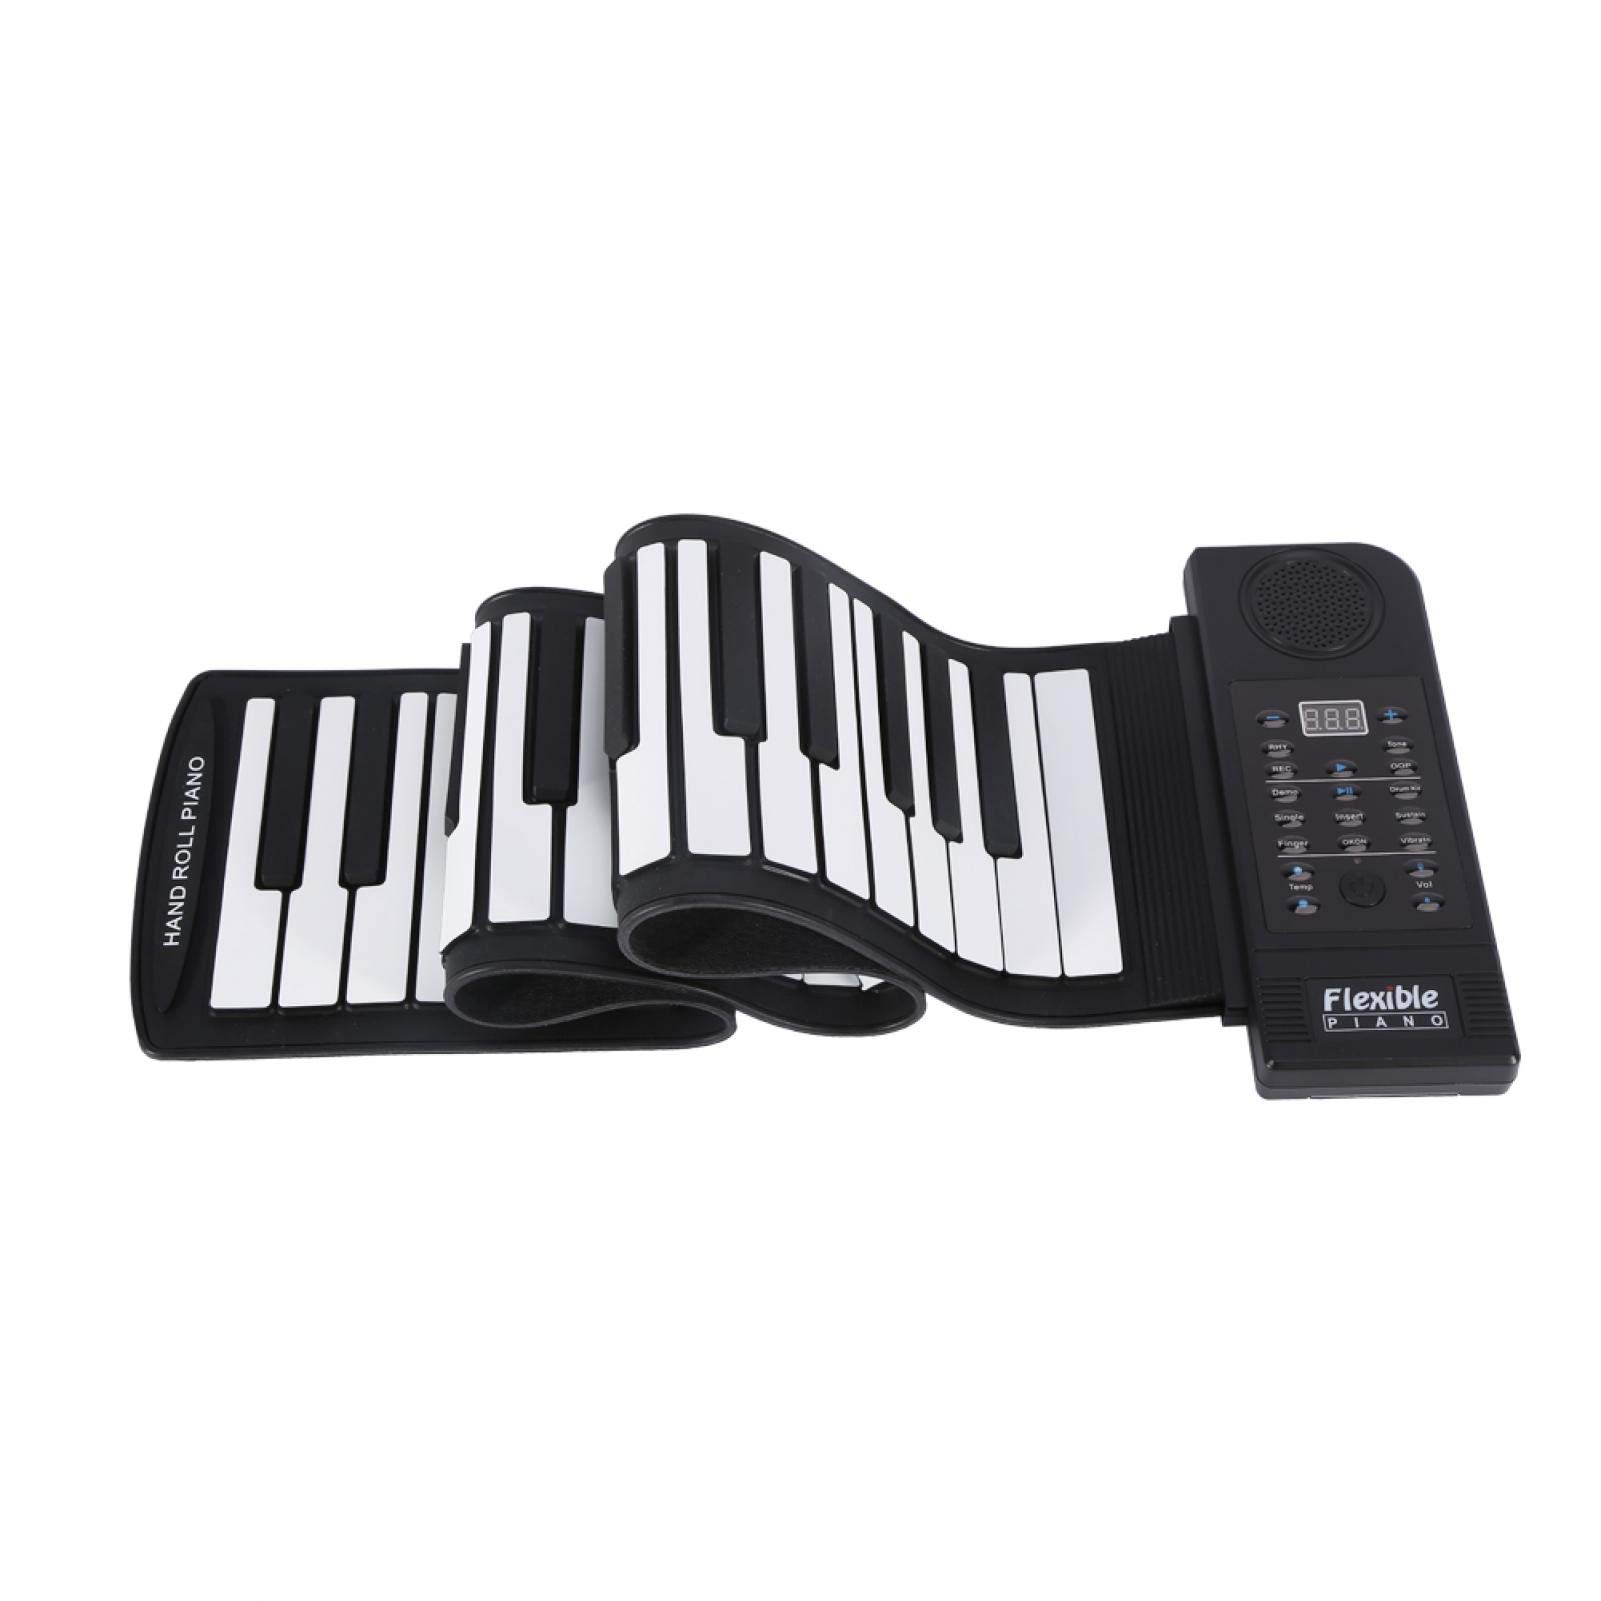 Roll Up Piano, tragbares 61 Tasten elektronisches weiches Silikon Flexibles Klavier Elektronische digitale Musik Tastatur Klavier für Kinder Erwachsene Home Entertainment Musikpraxis